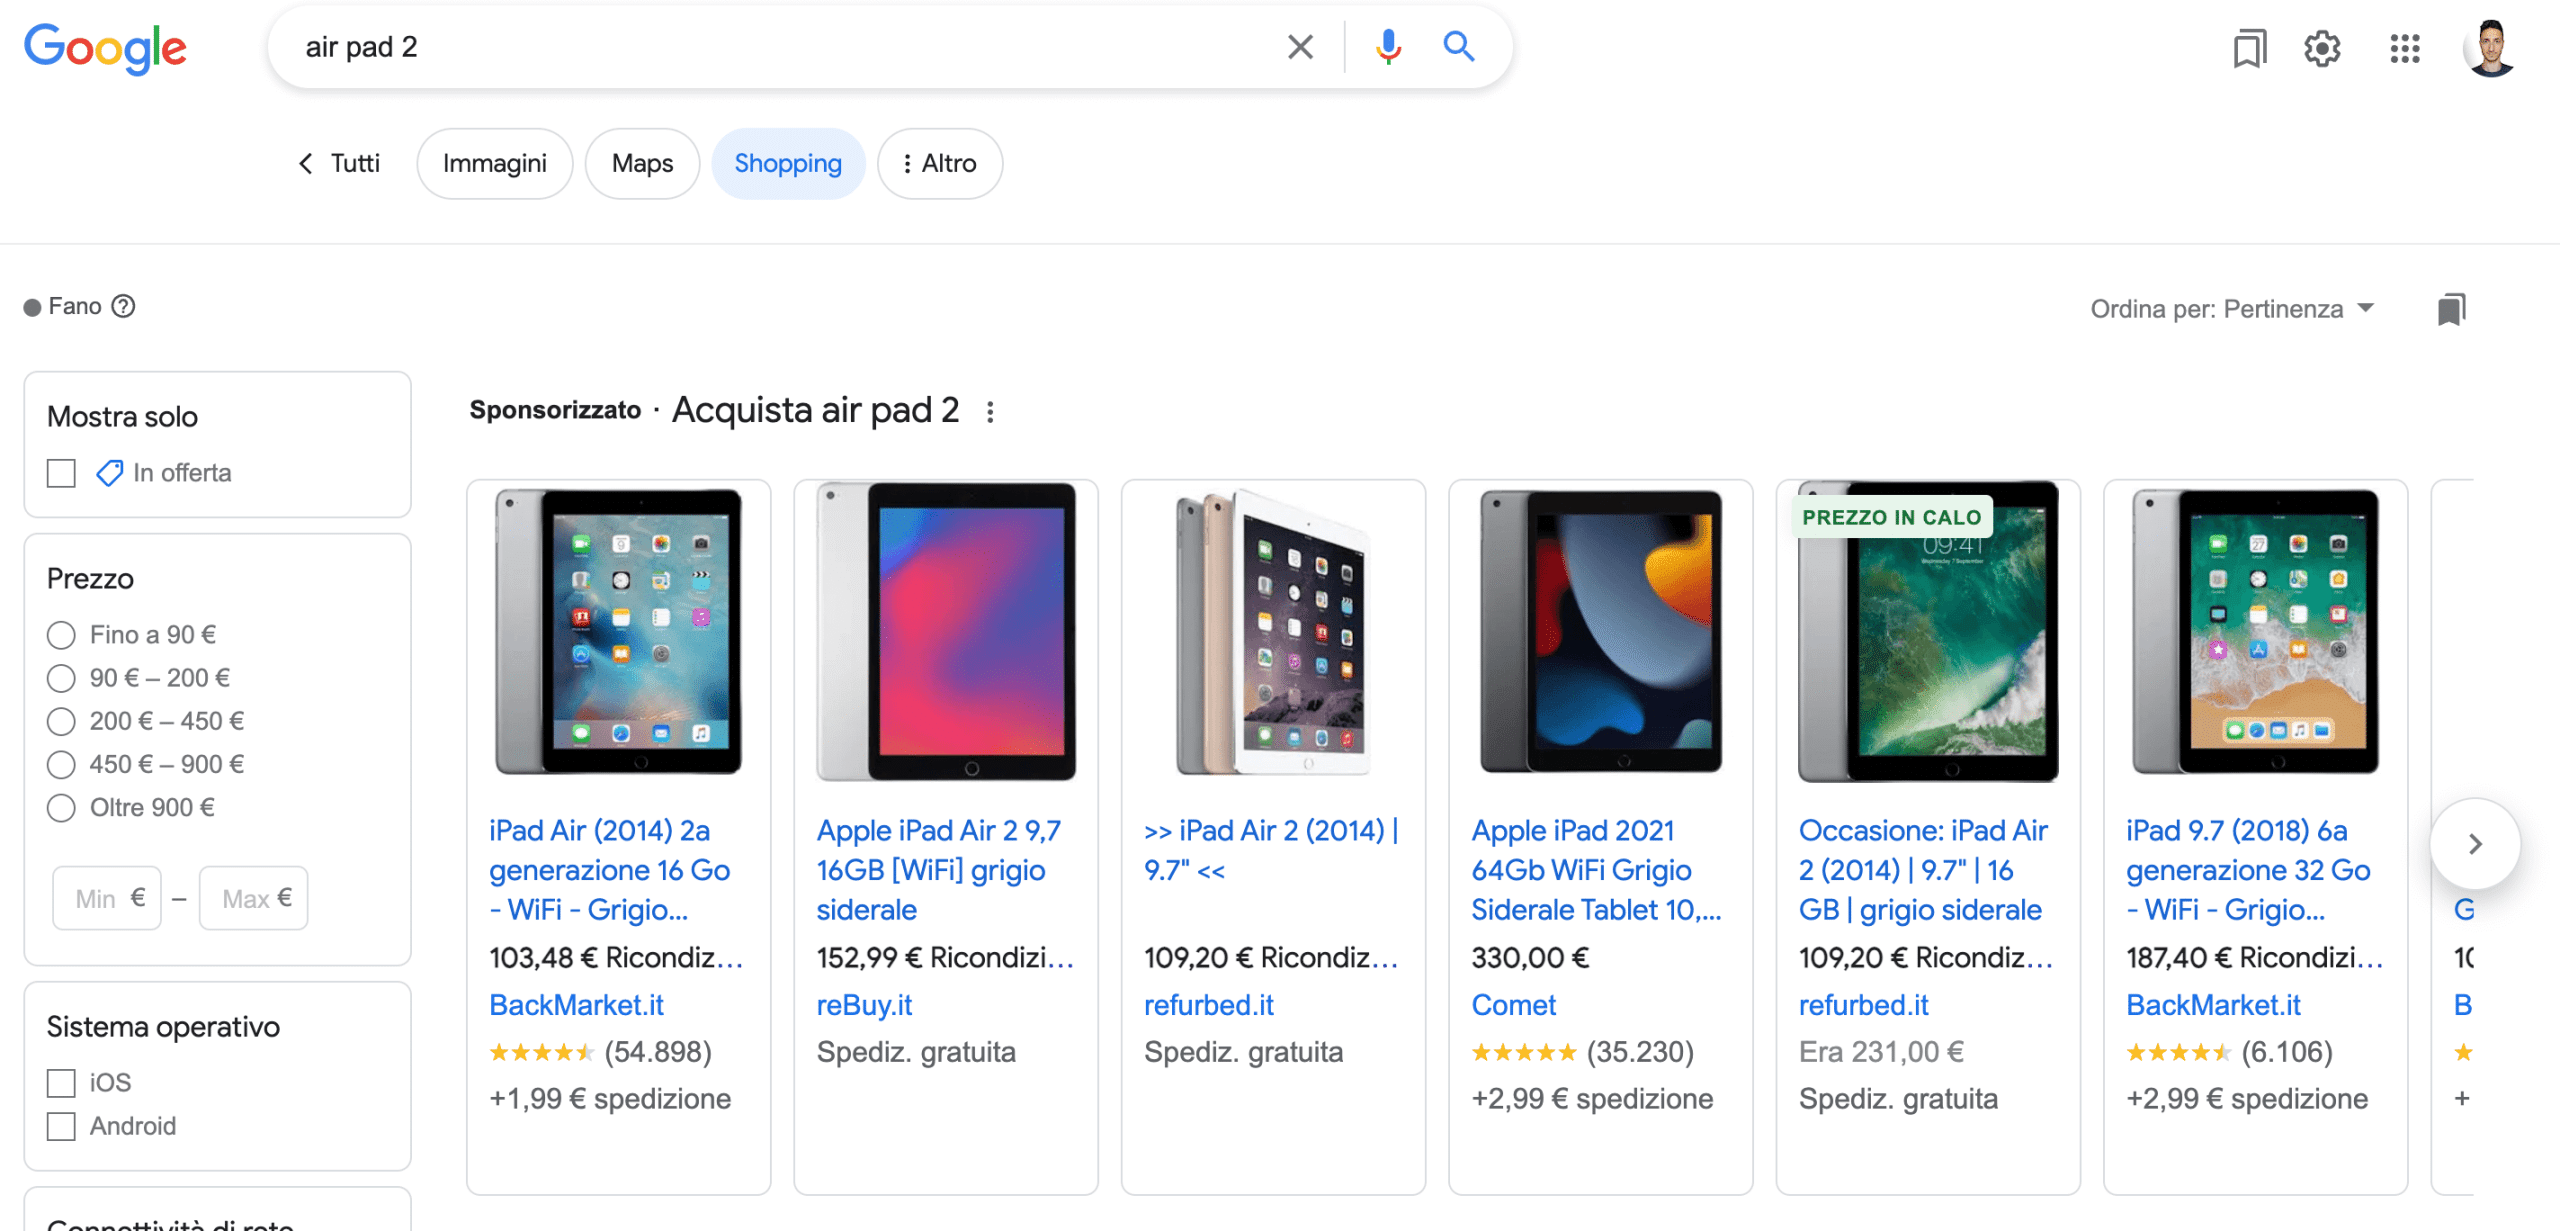 Cos'è Google Shopping, schermata di ricerca